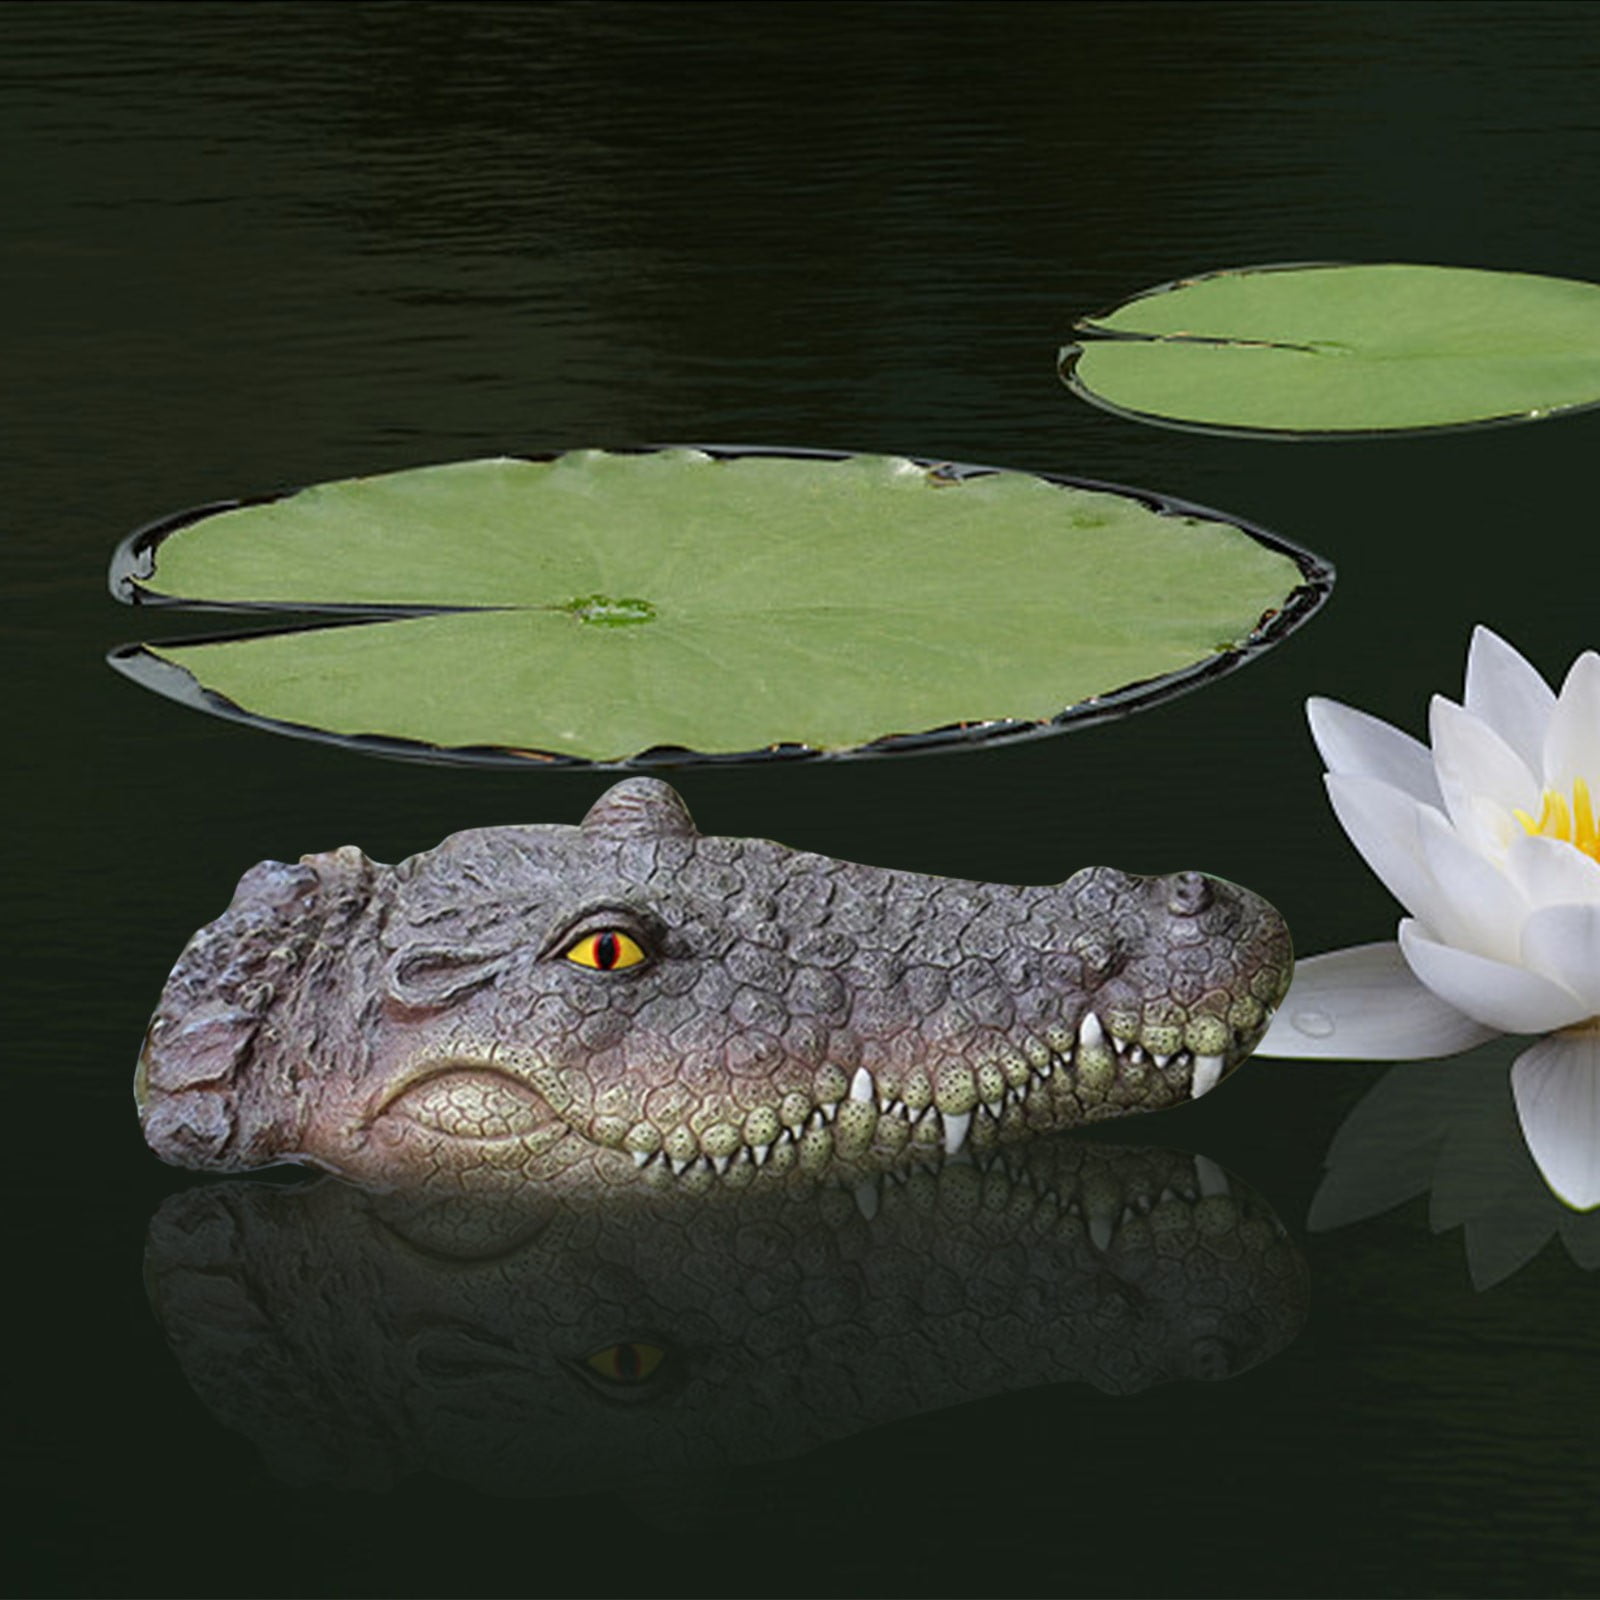 Floating Alligator Head Decoy, deter Animals Solution Float Gator for Pool Pond Garden Defender Decoration, Size: One size, Green